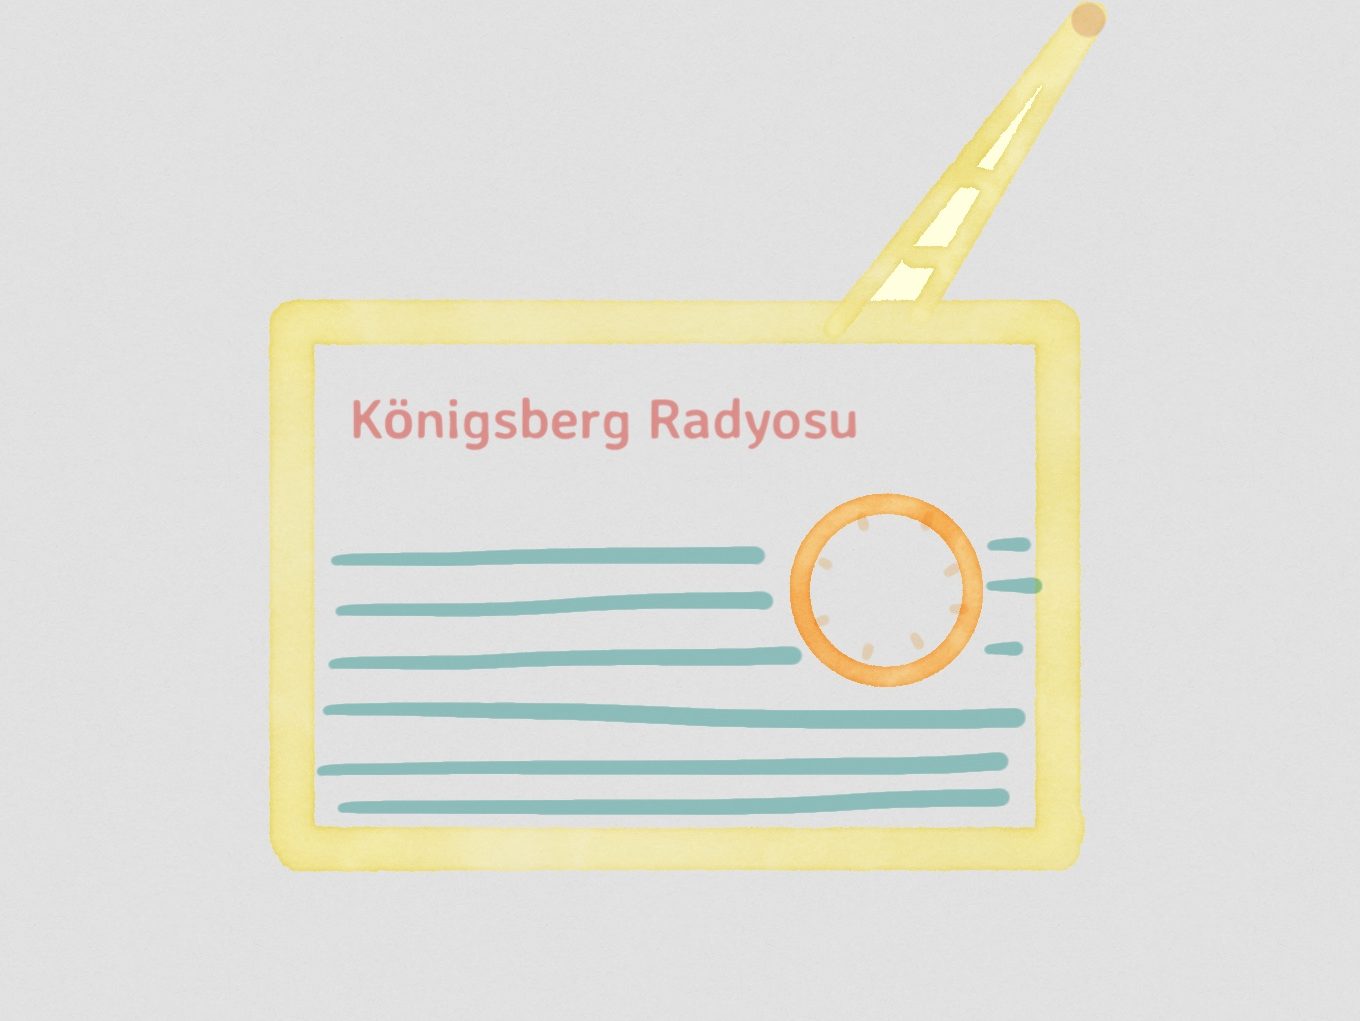 Königsberg Radyosu